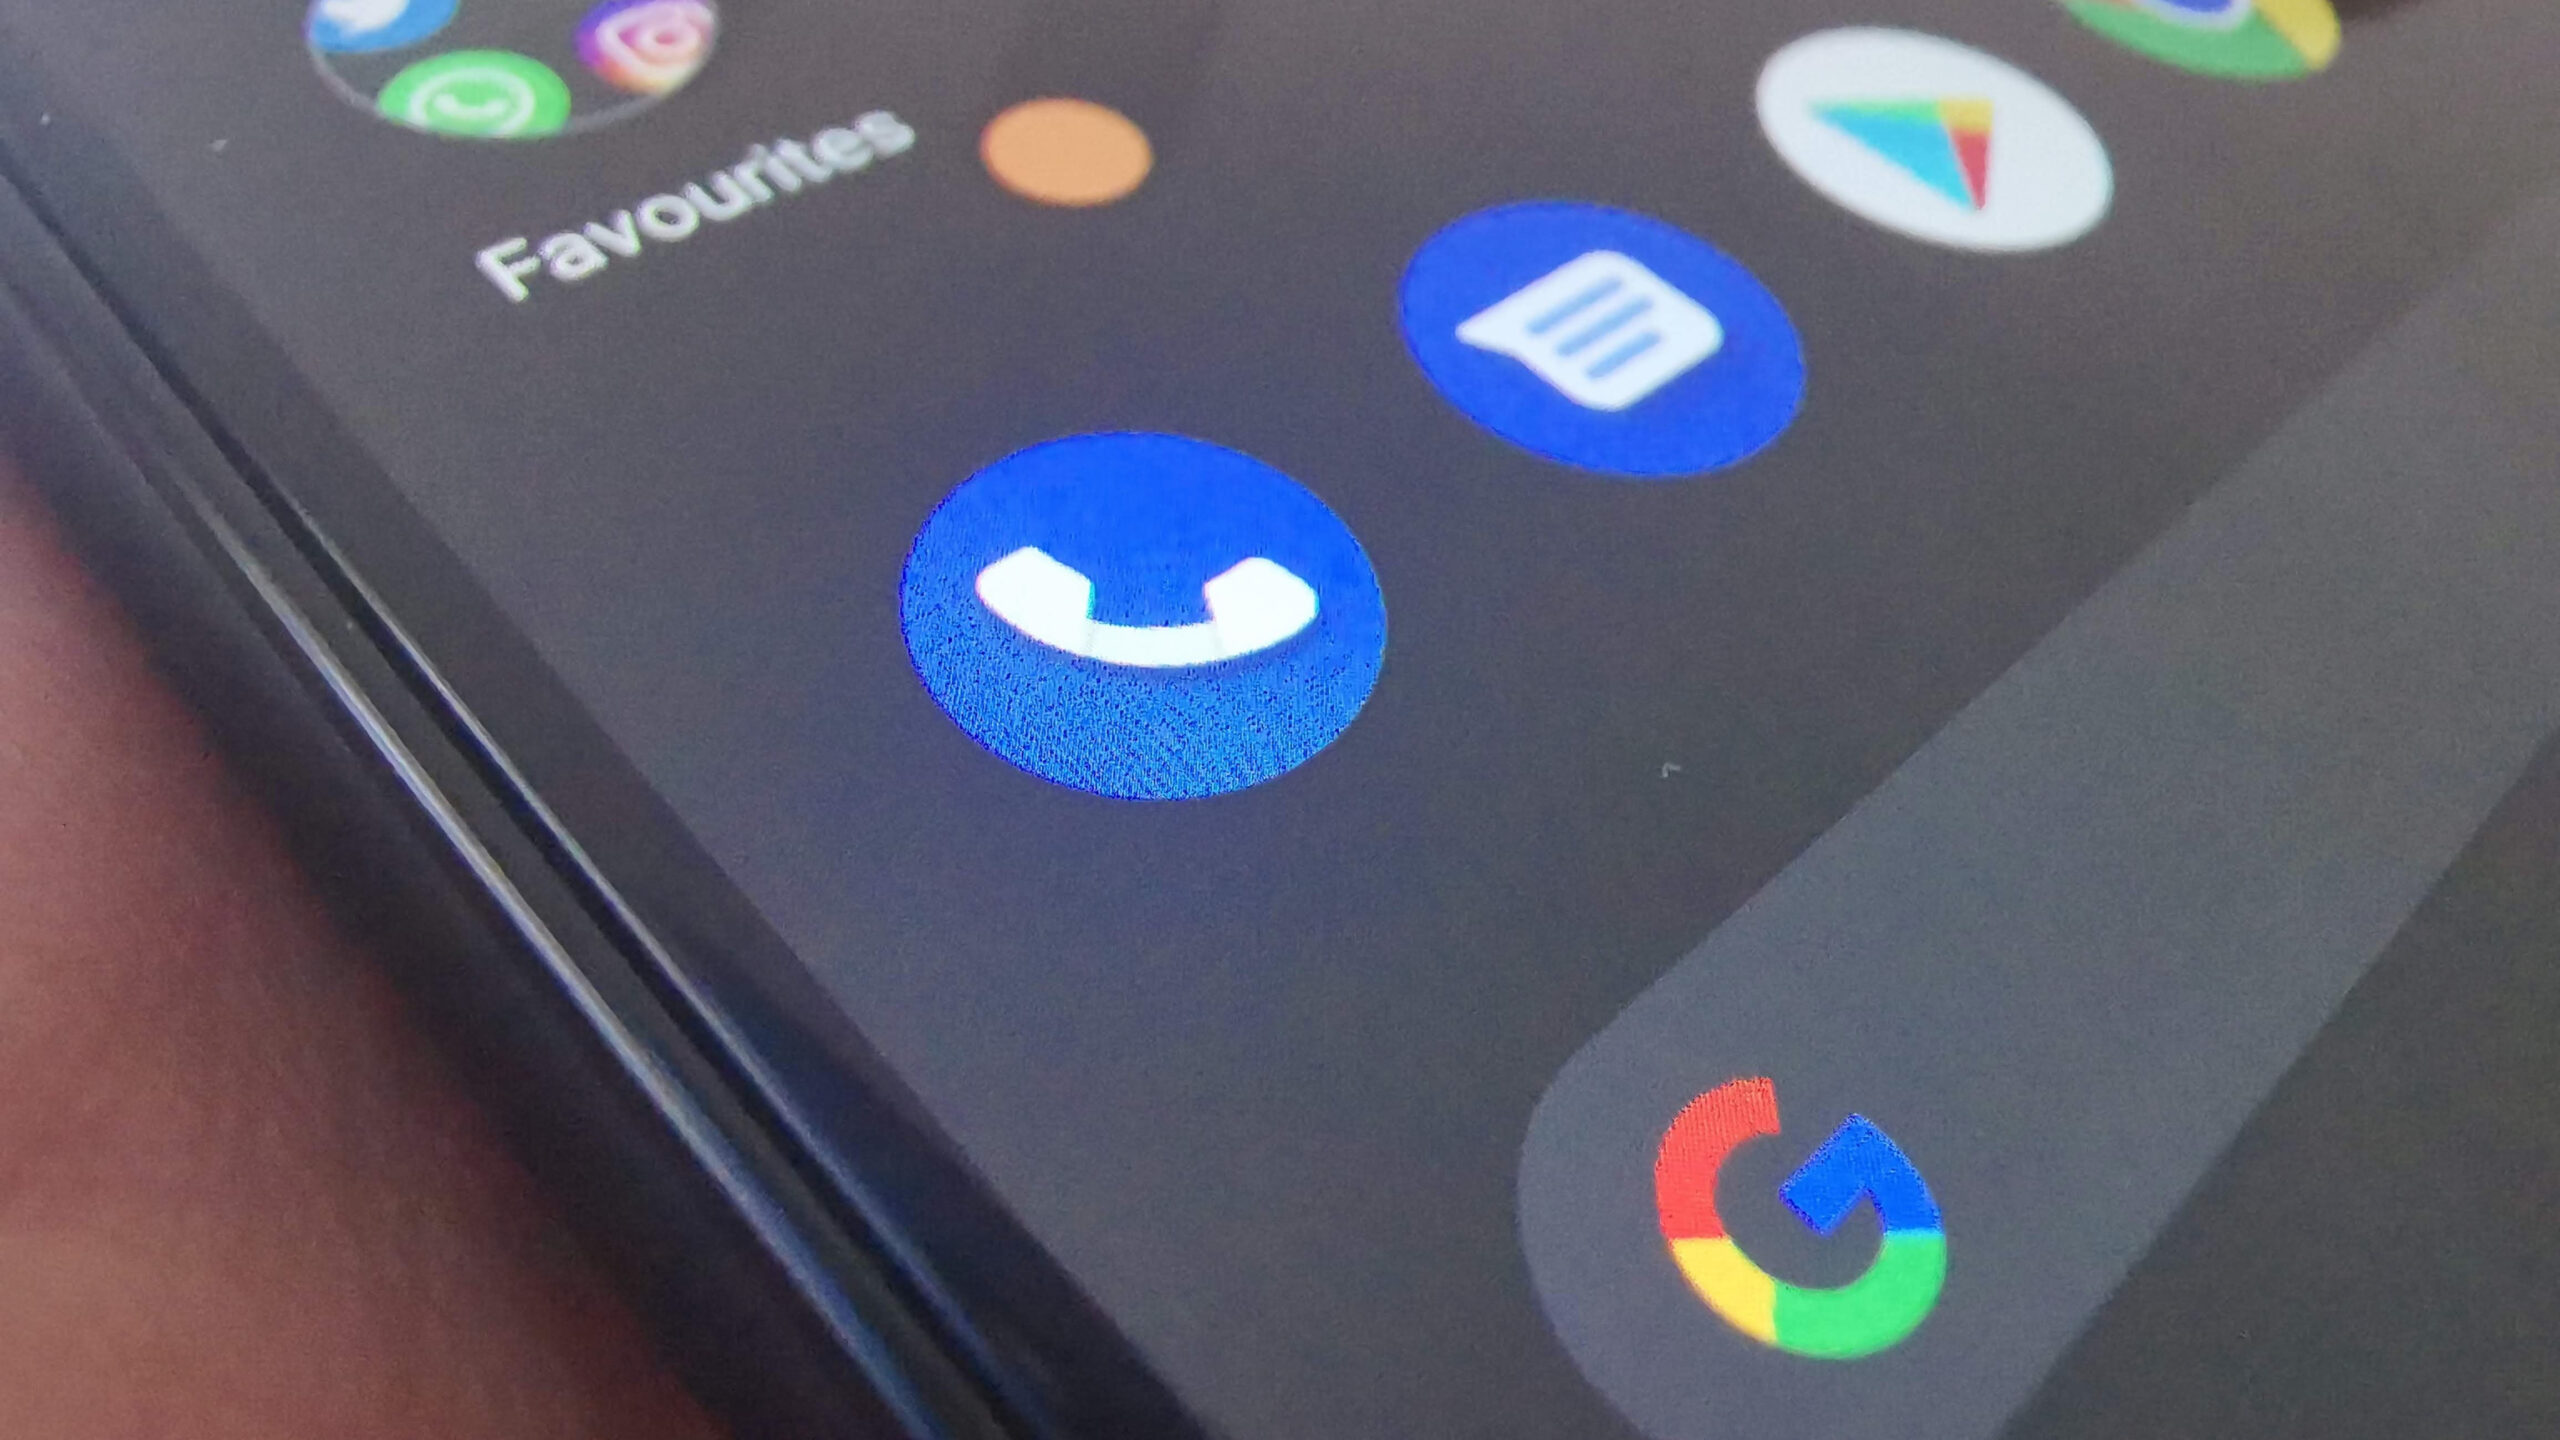 Загуглити номер: у застосунку Google Phone тестується нова функція - пошук невідомого номера